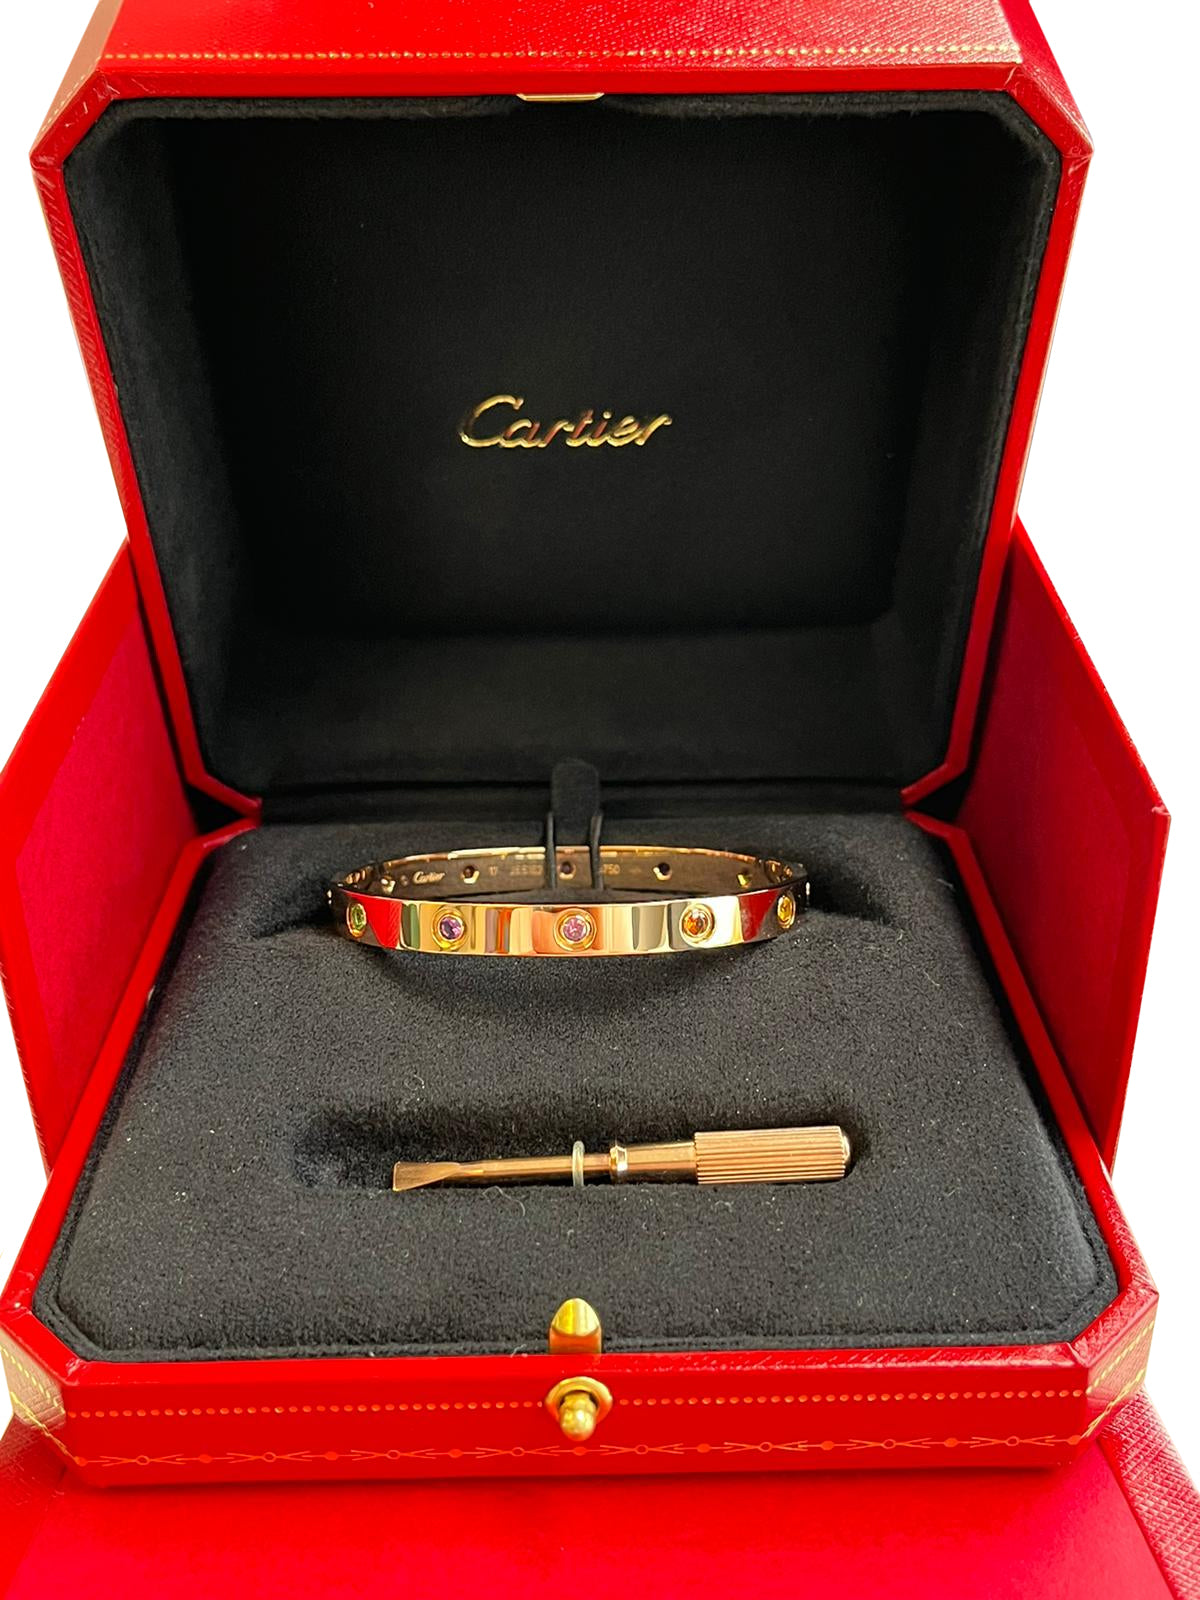 Cartier Love 10 Colored Gemstones 18K Rose Gold Size 17 Bracelet Bangle